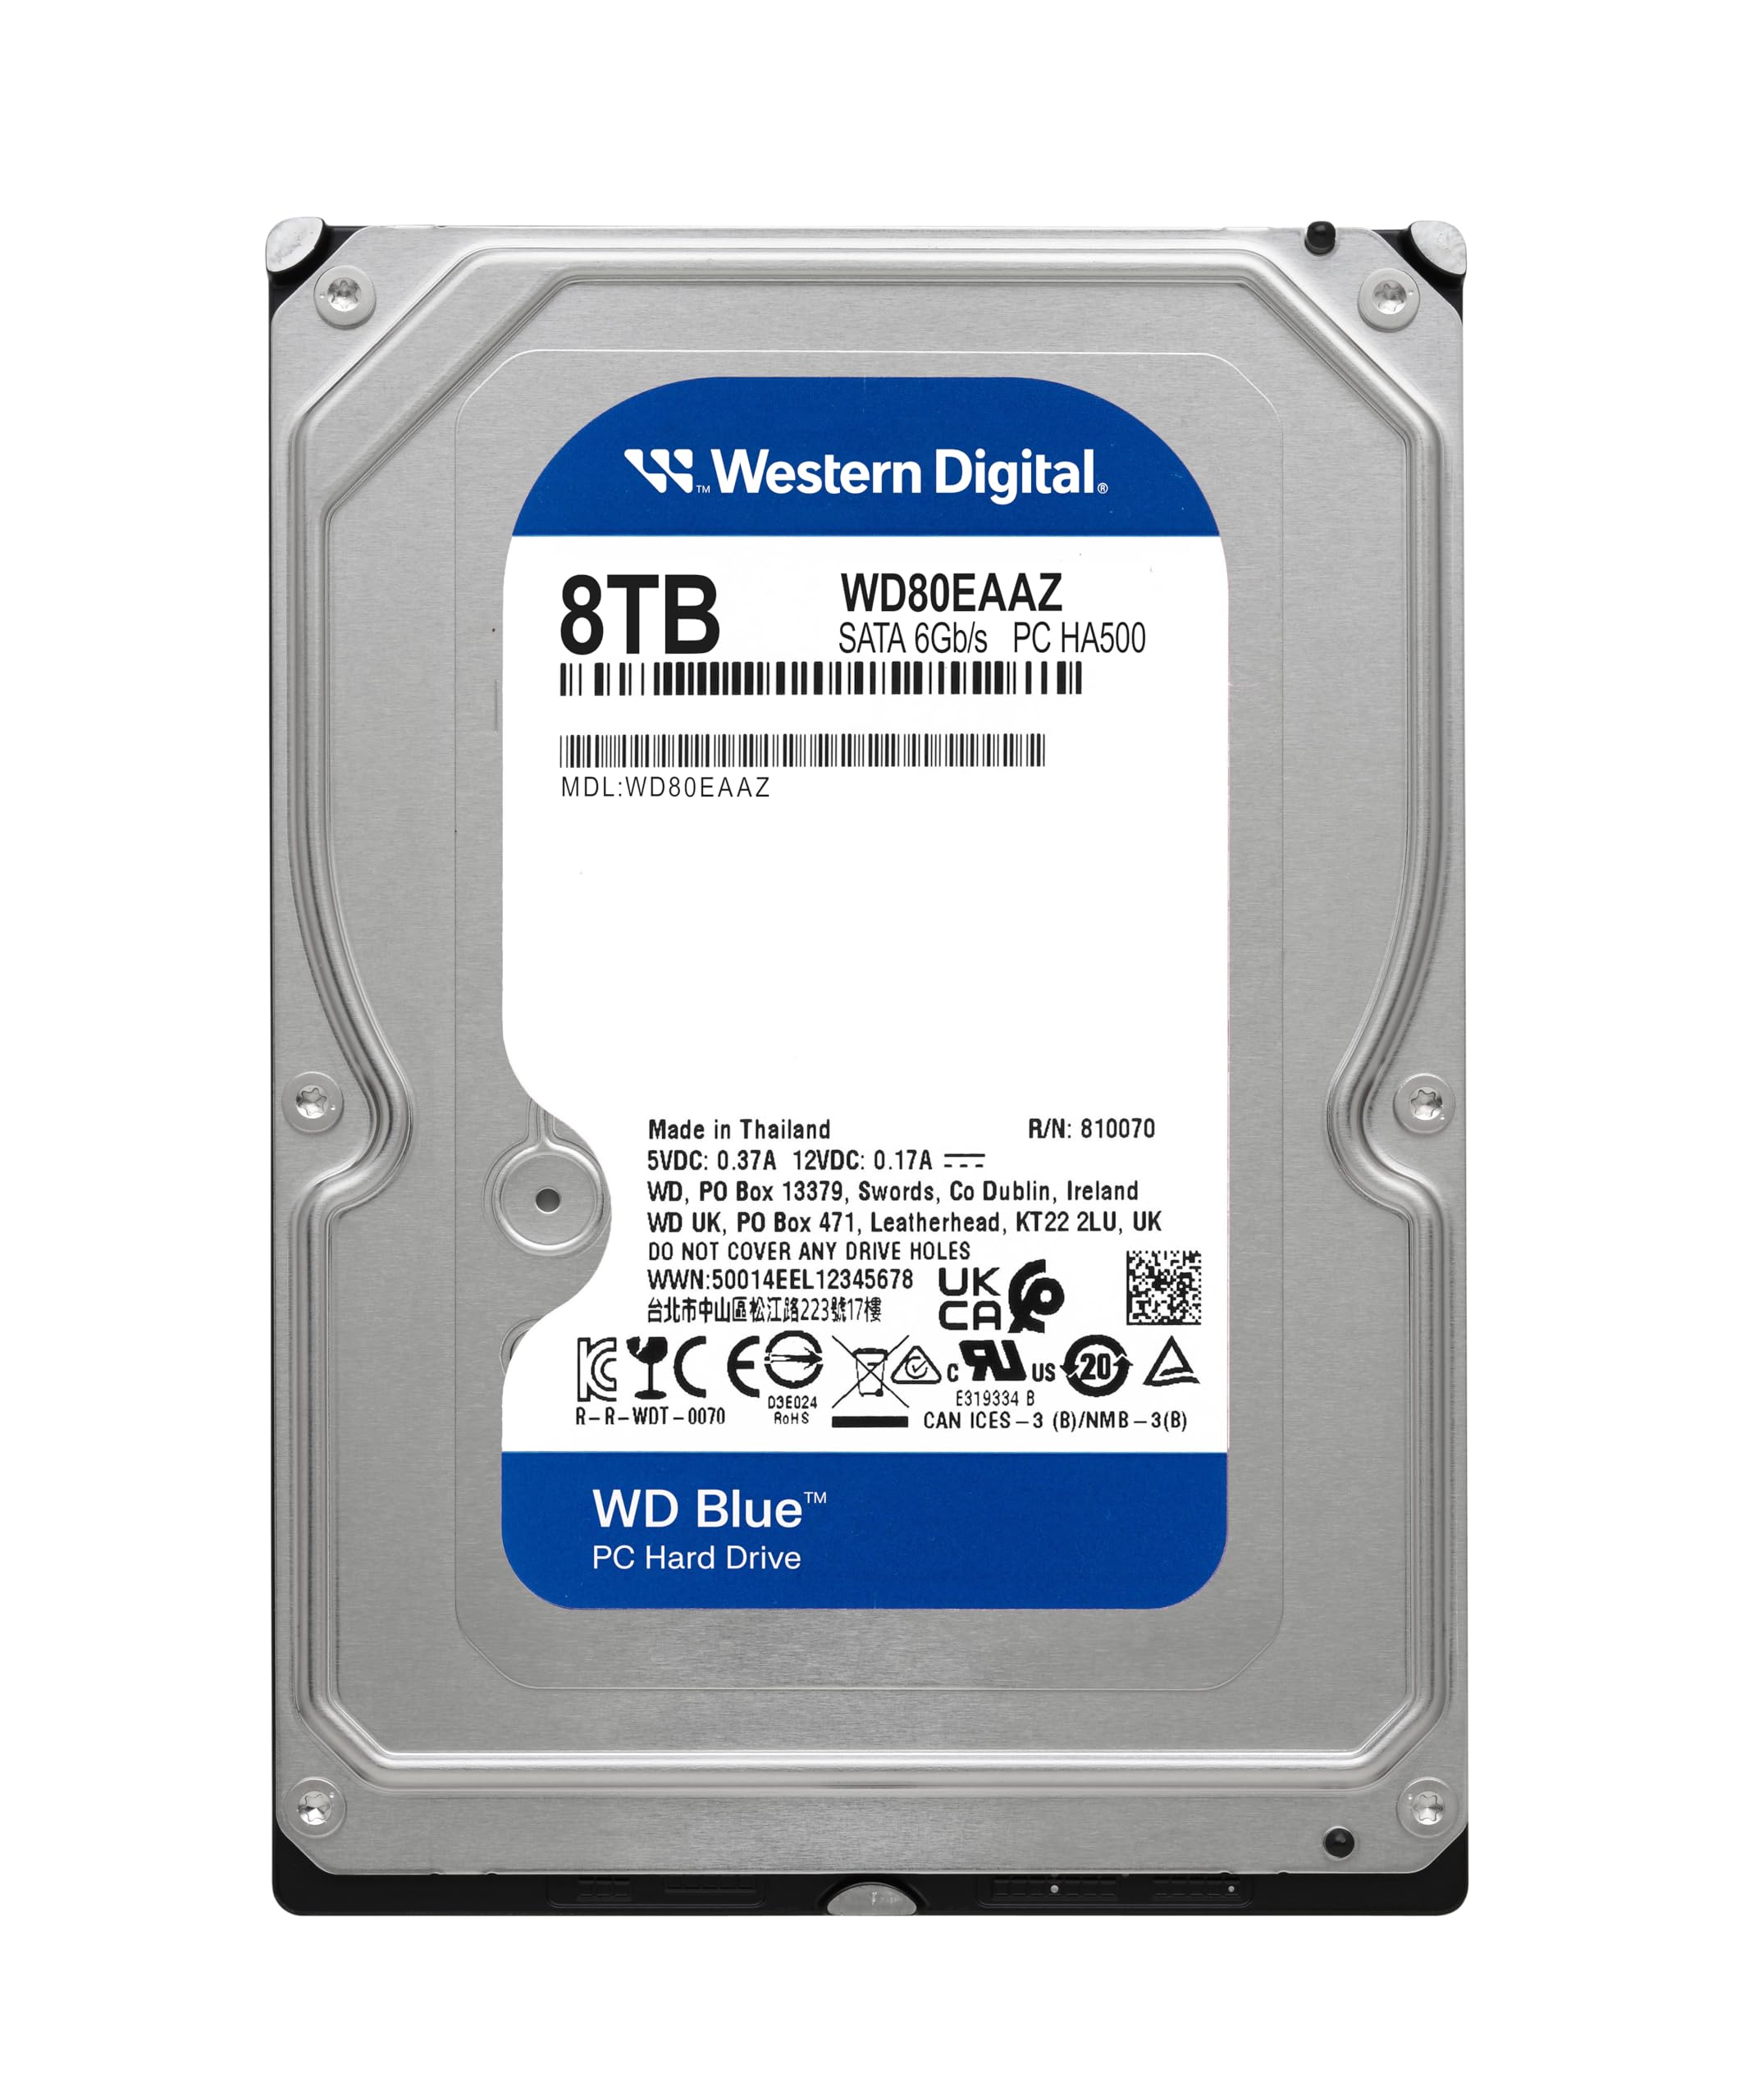 Western Digital 8TB WD Blue PC Internal Hard Drive HDD - 5640 RPM, SATA 6 Gb/s, 256 MB Cache, 3.5" - WD80EAAZ $109.99